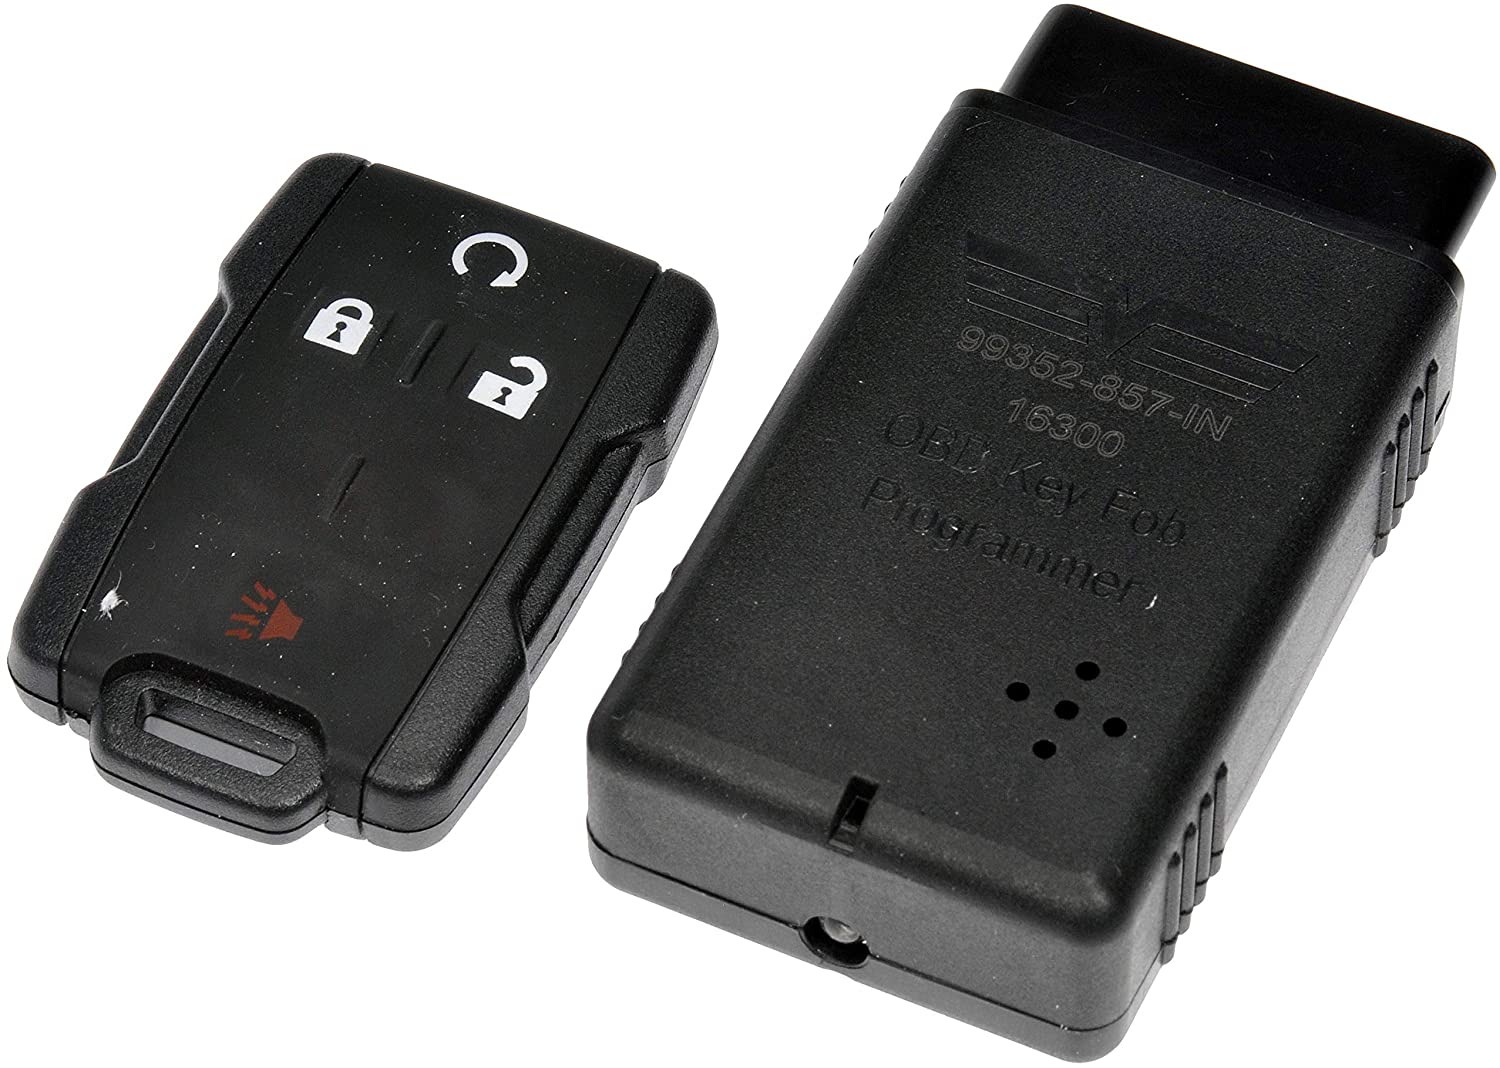 Dorman 99352 Keyless Entry Transmitter for Select Chevrolet/GMC Models (OE FIX)